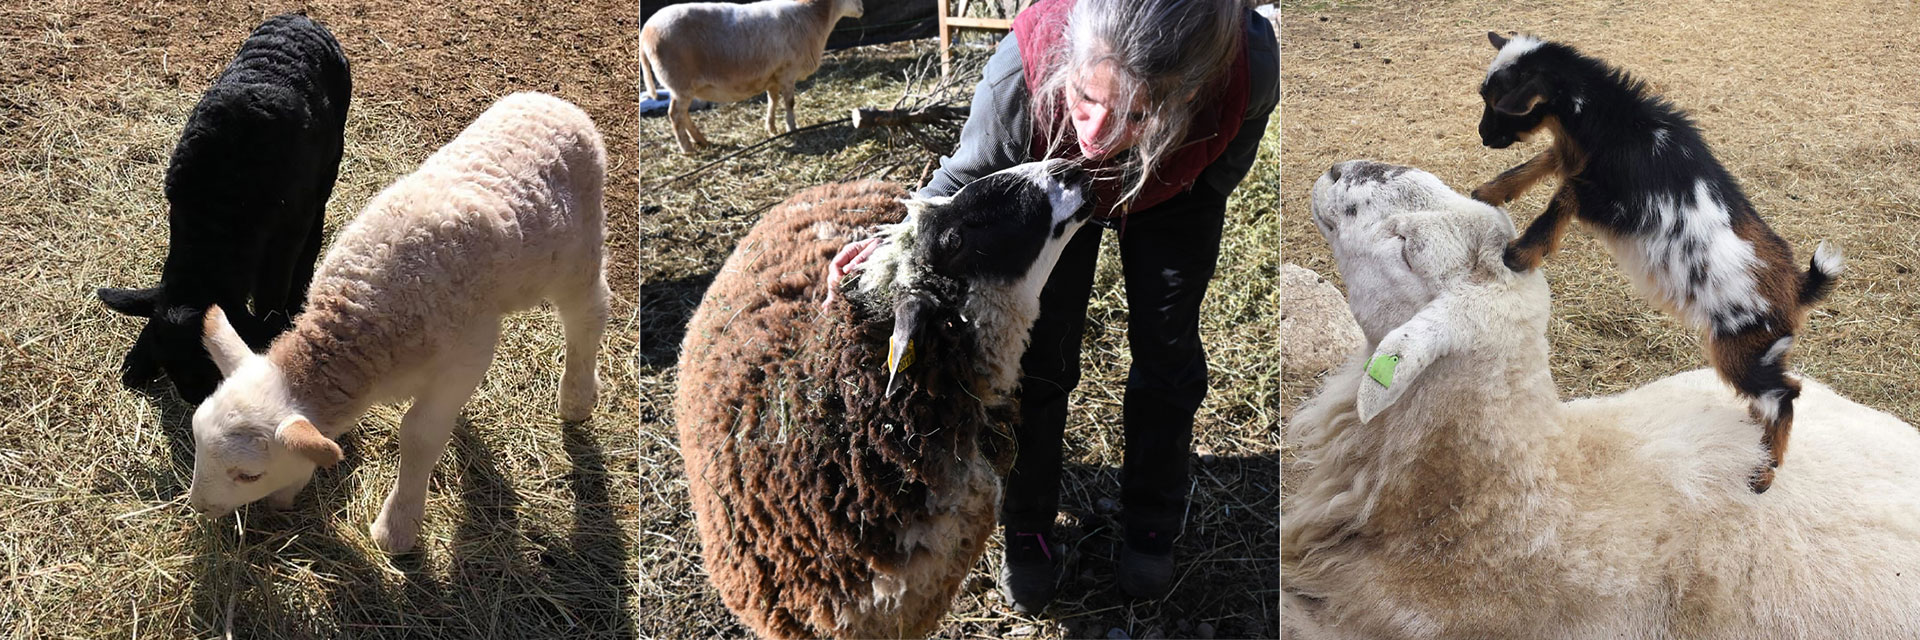 Sheep at Three Charm Farm